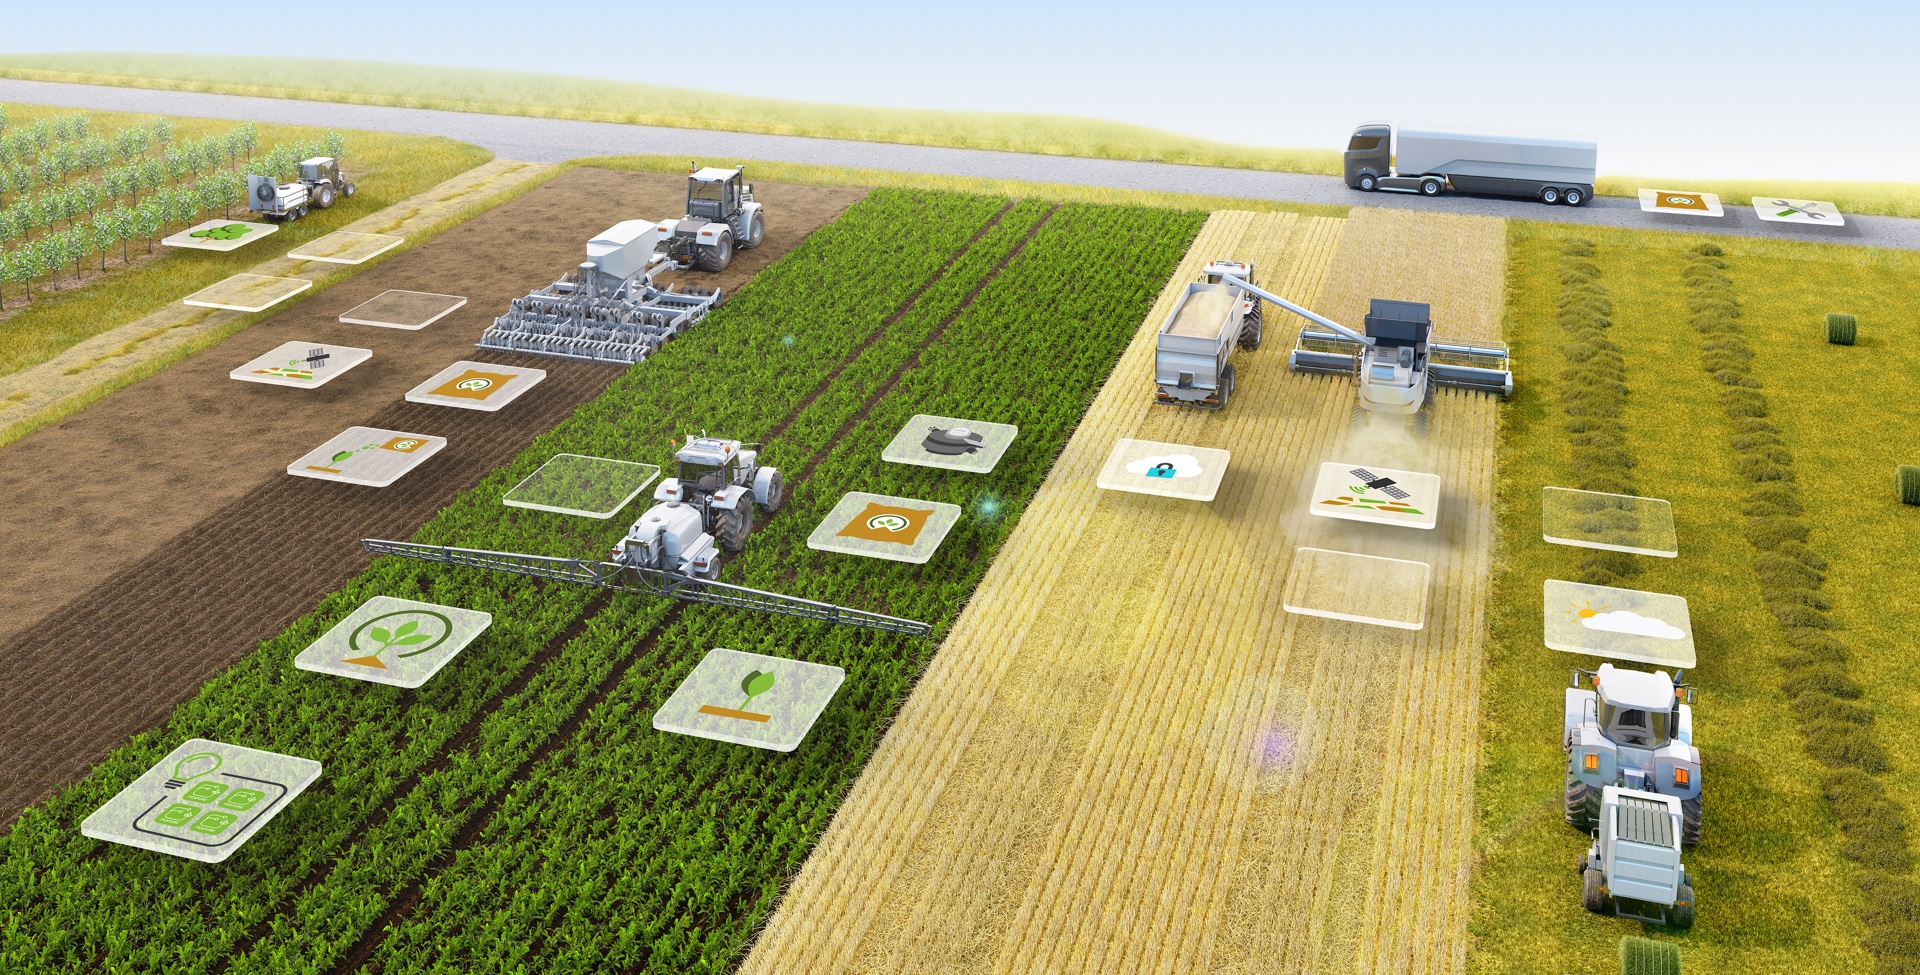 Агротехническая 2. Технологии в сельском хозяйстве. Сельскохозяйственный комплекс. Современные технологии в сельском хозяйстве. Умные технологии в сельском хозяйстве.